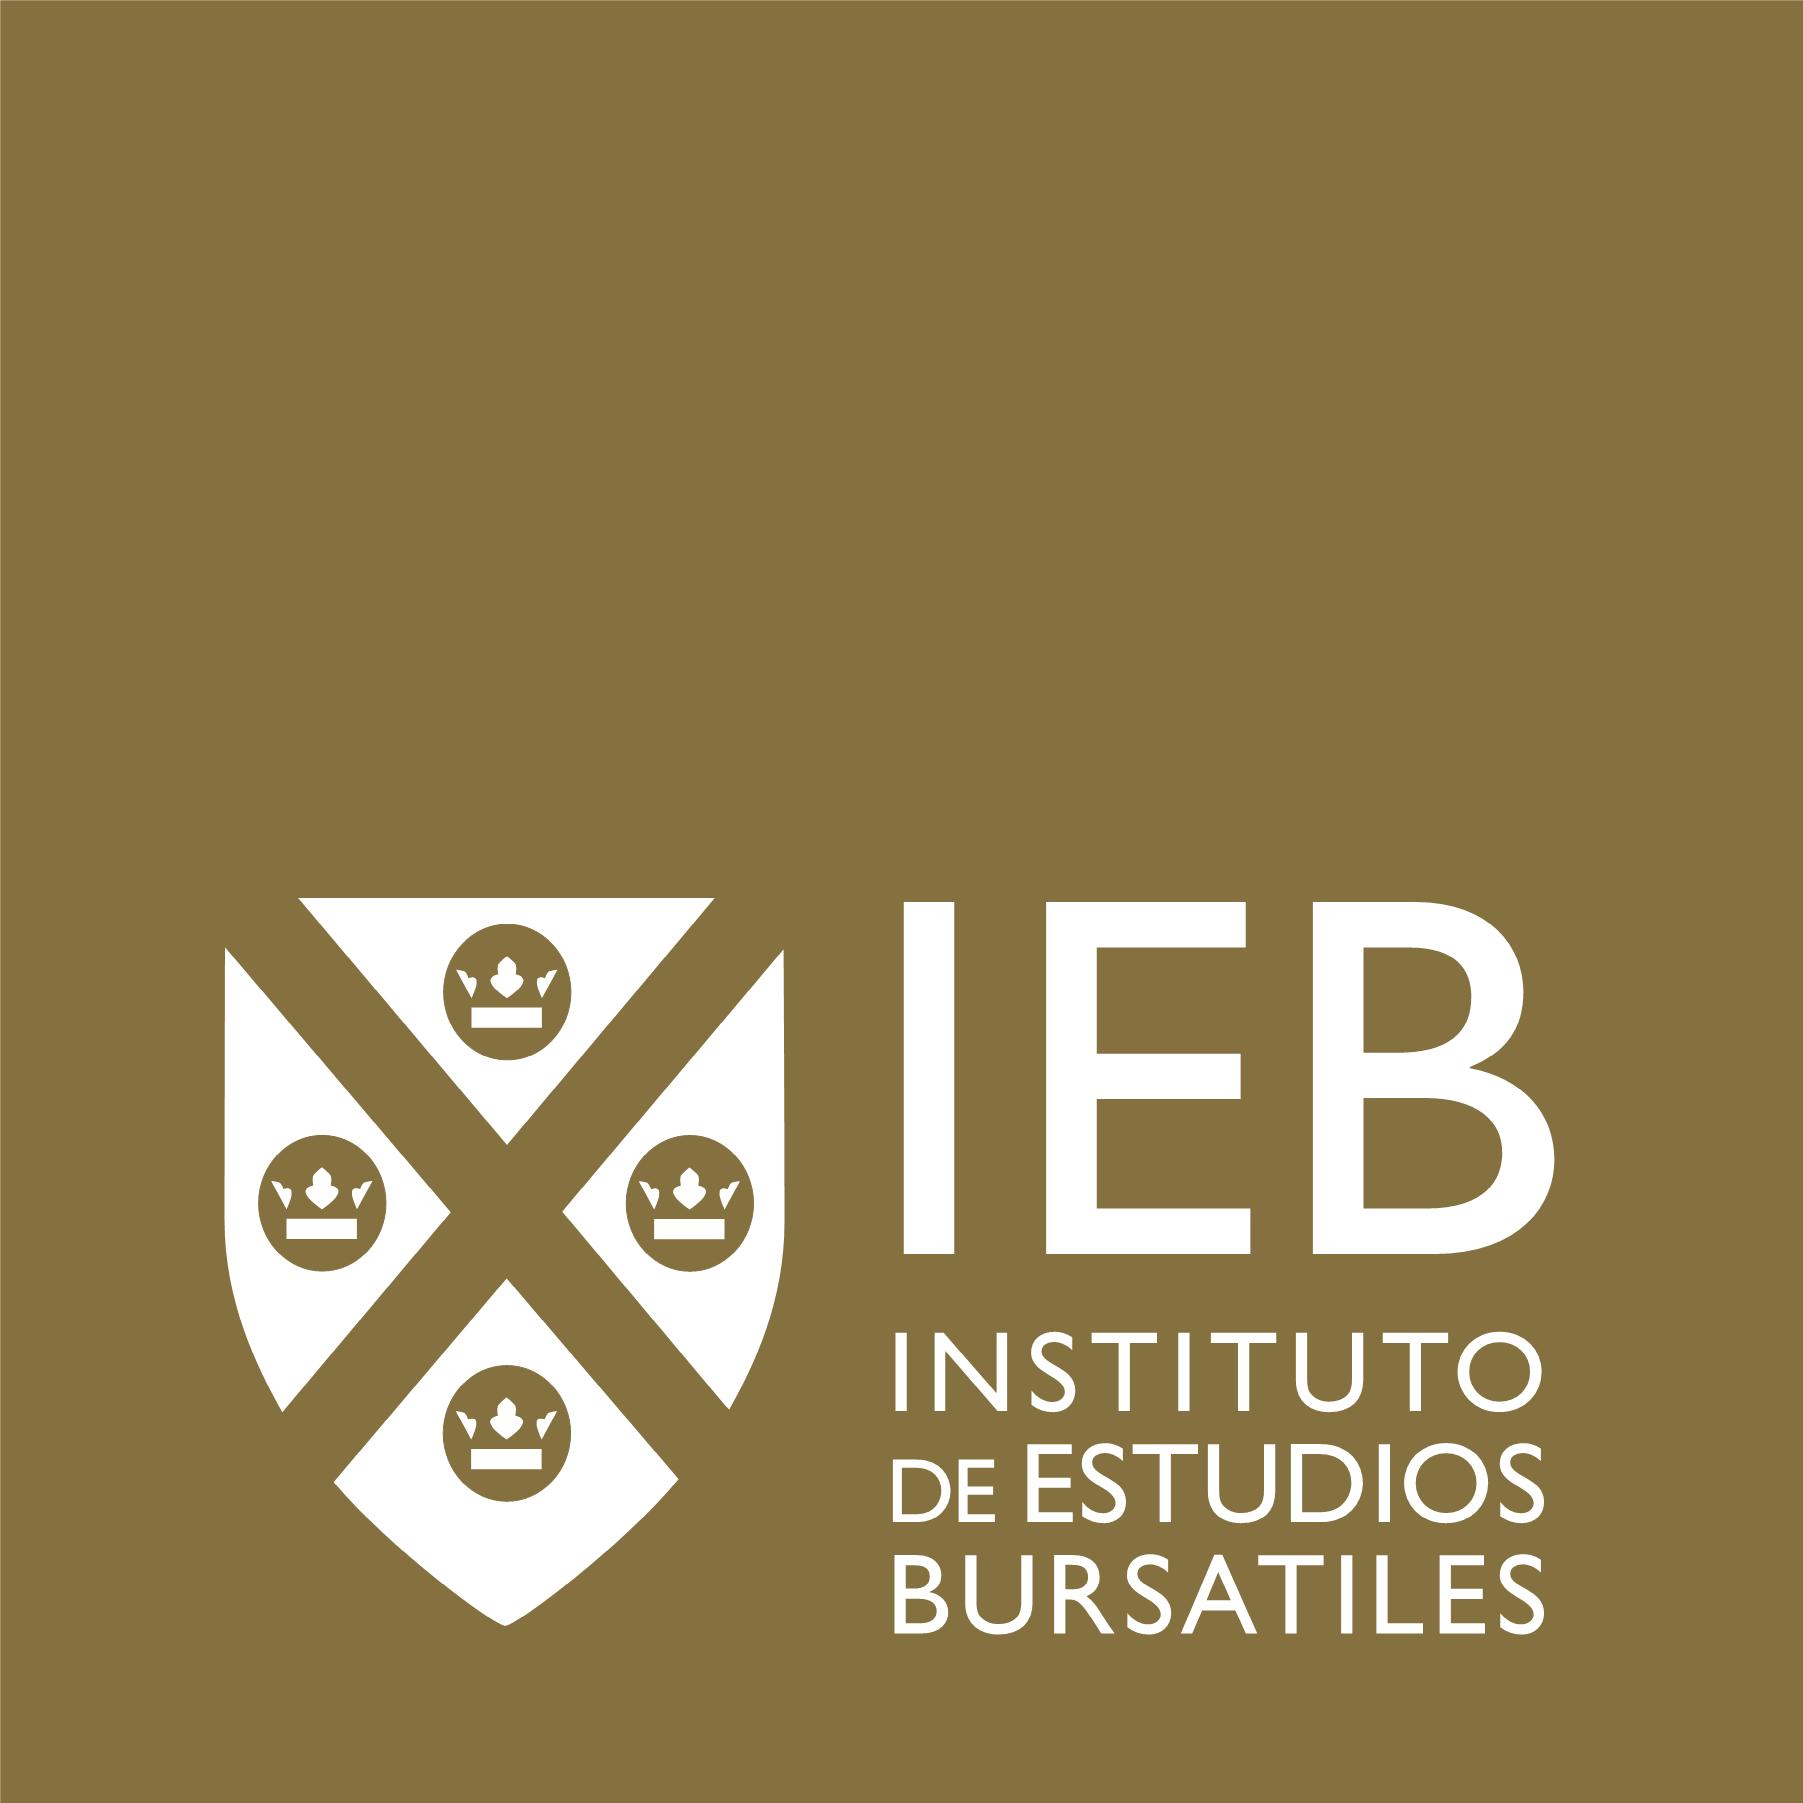 Global MBA online con especialización en Finanzas - IEB - Instituto de Estudios Bursátiles